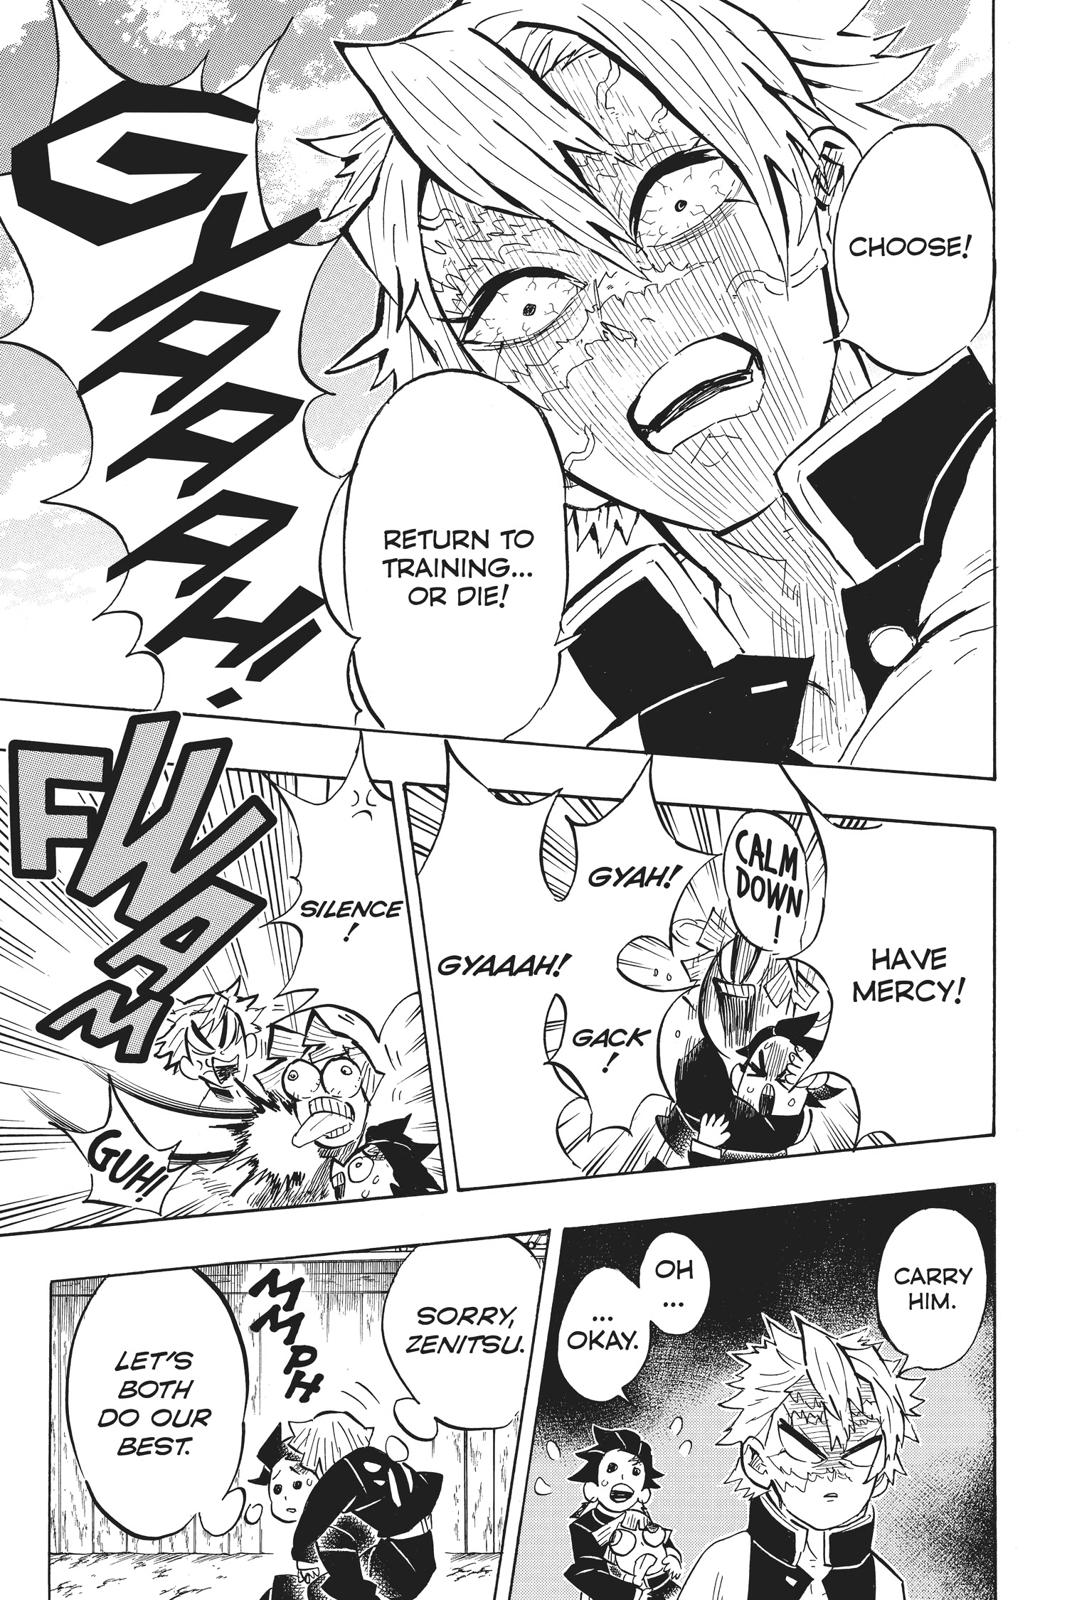 Demon Slayer Manga Manga Chapter - 132 - image 7